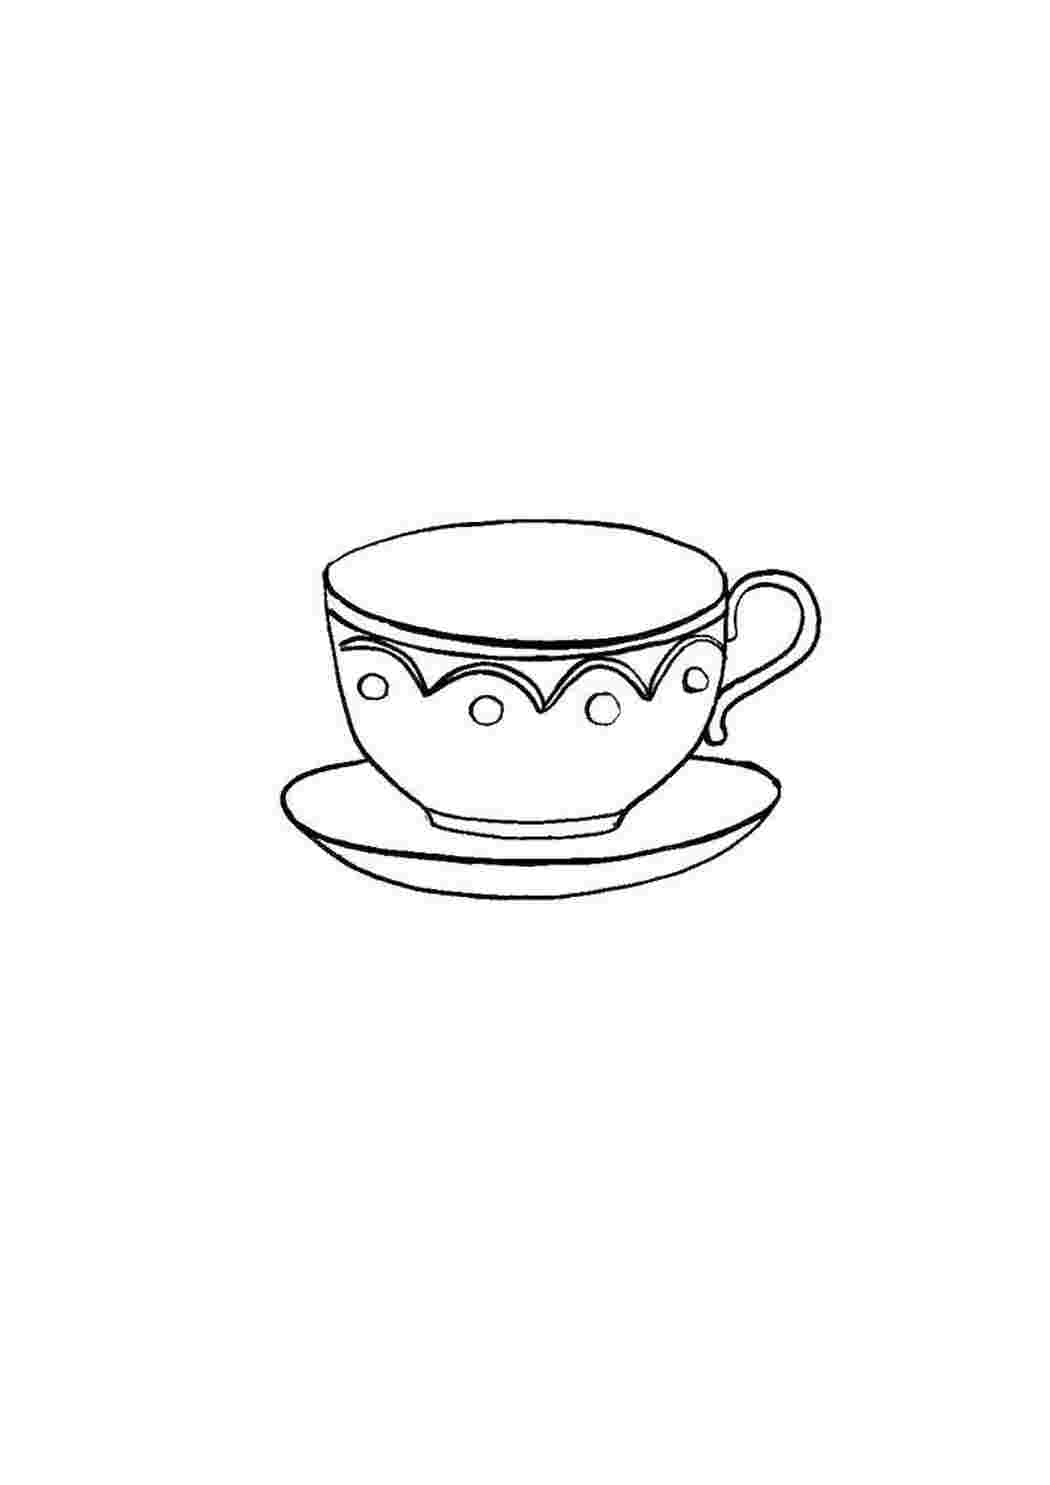 Подарочный набор: чайная чашка с блюдцем форма Идиллия рисунок Скарлетт № 1 Императорский фарфор